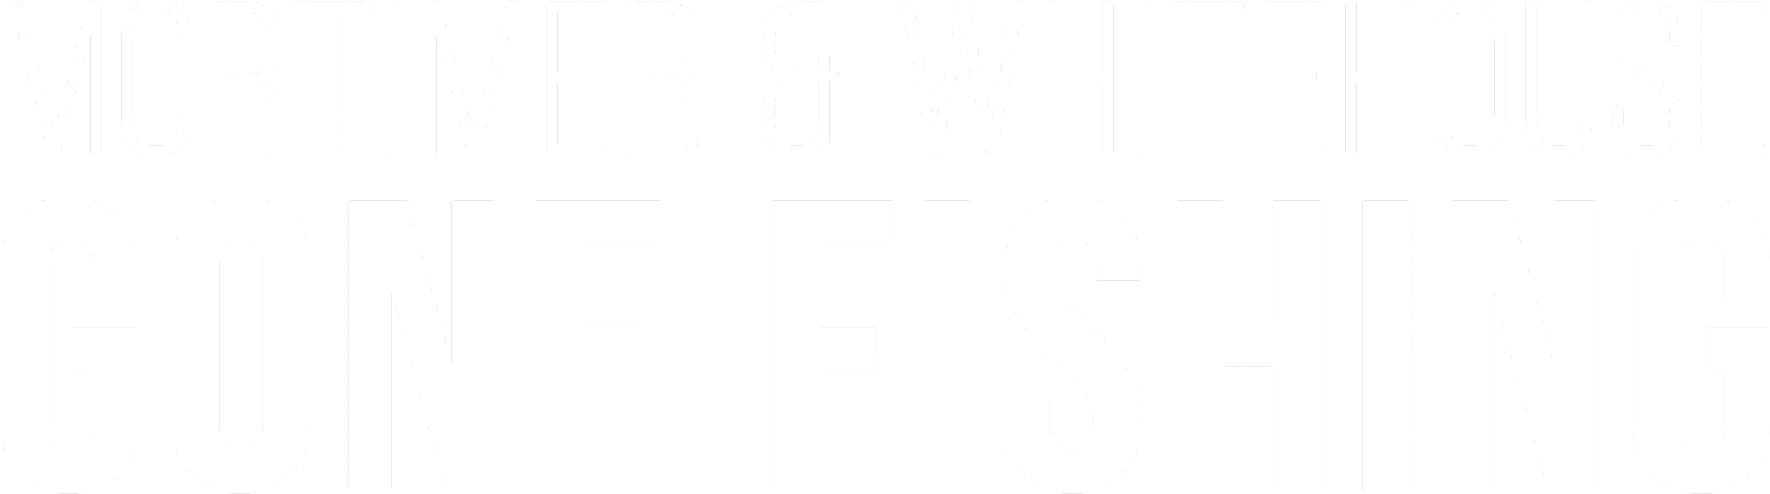 Mortimer & Whitehouse: Gone Fishing logo